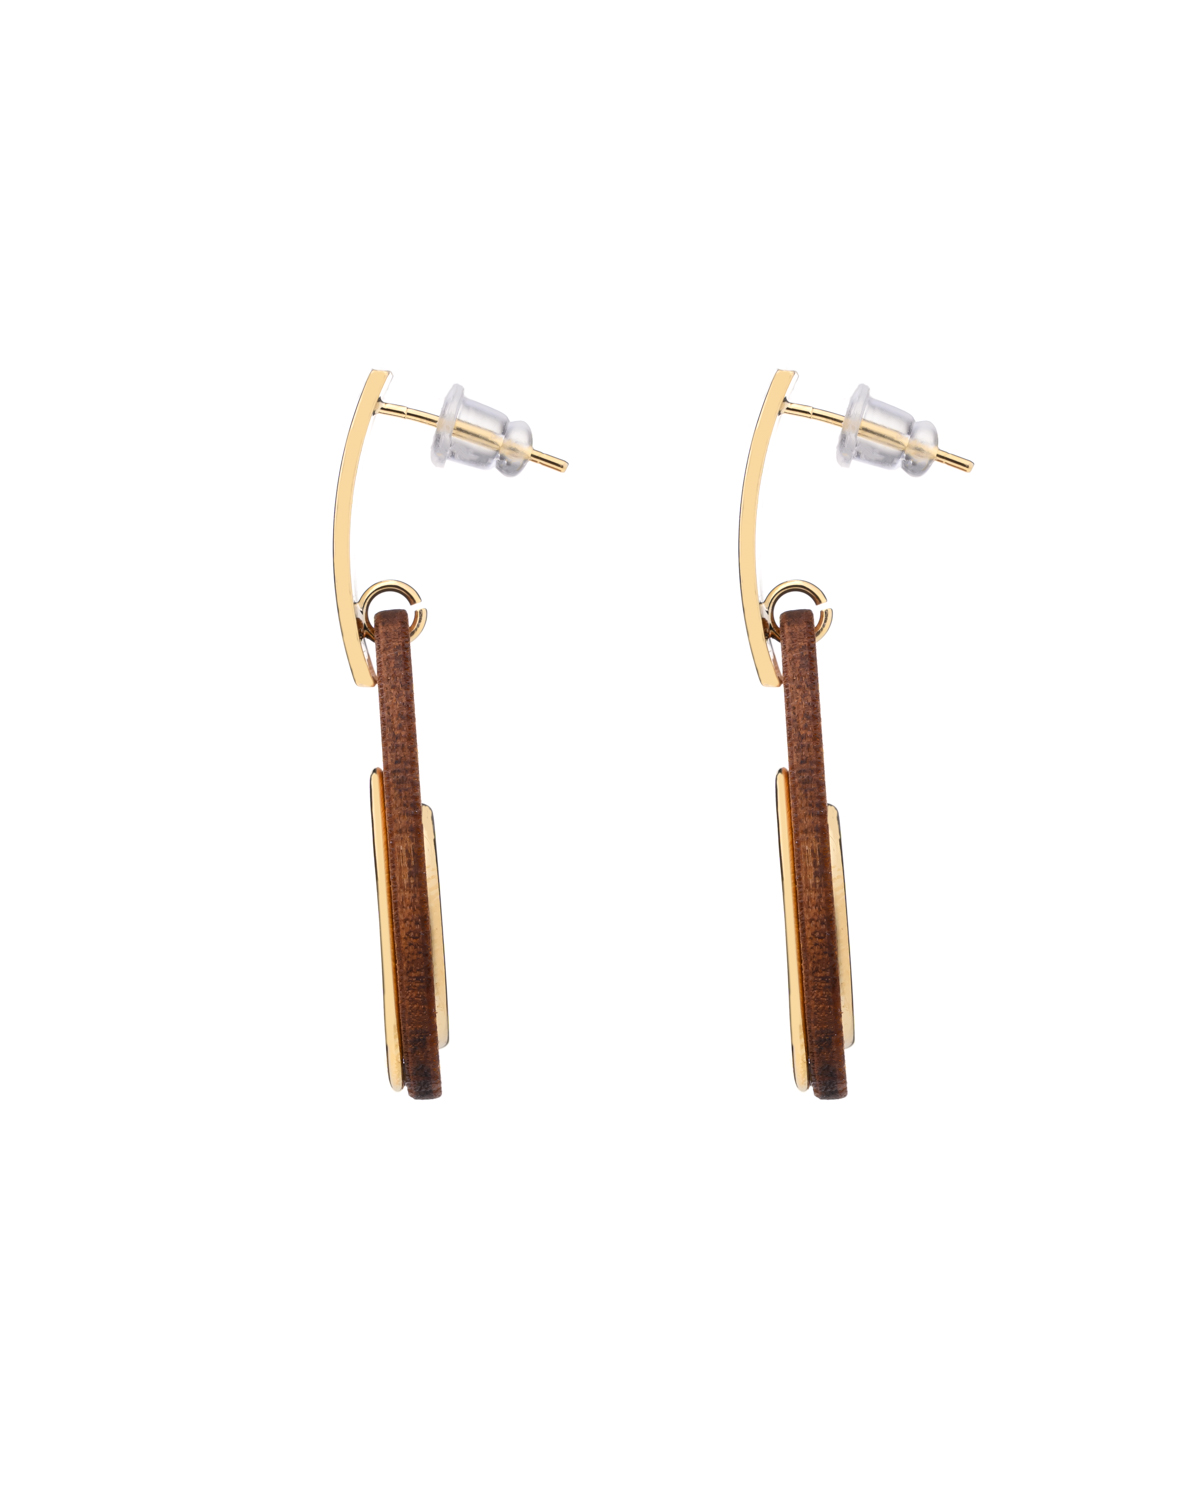 Wood and Metal earrings